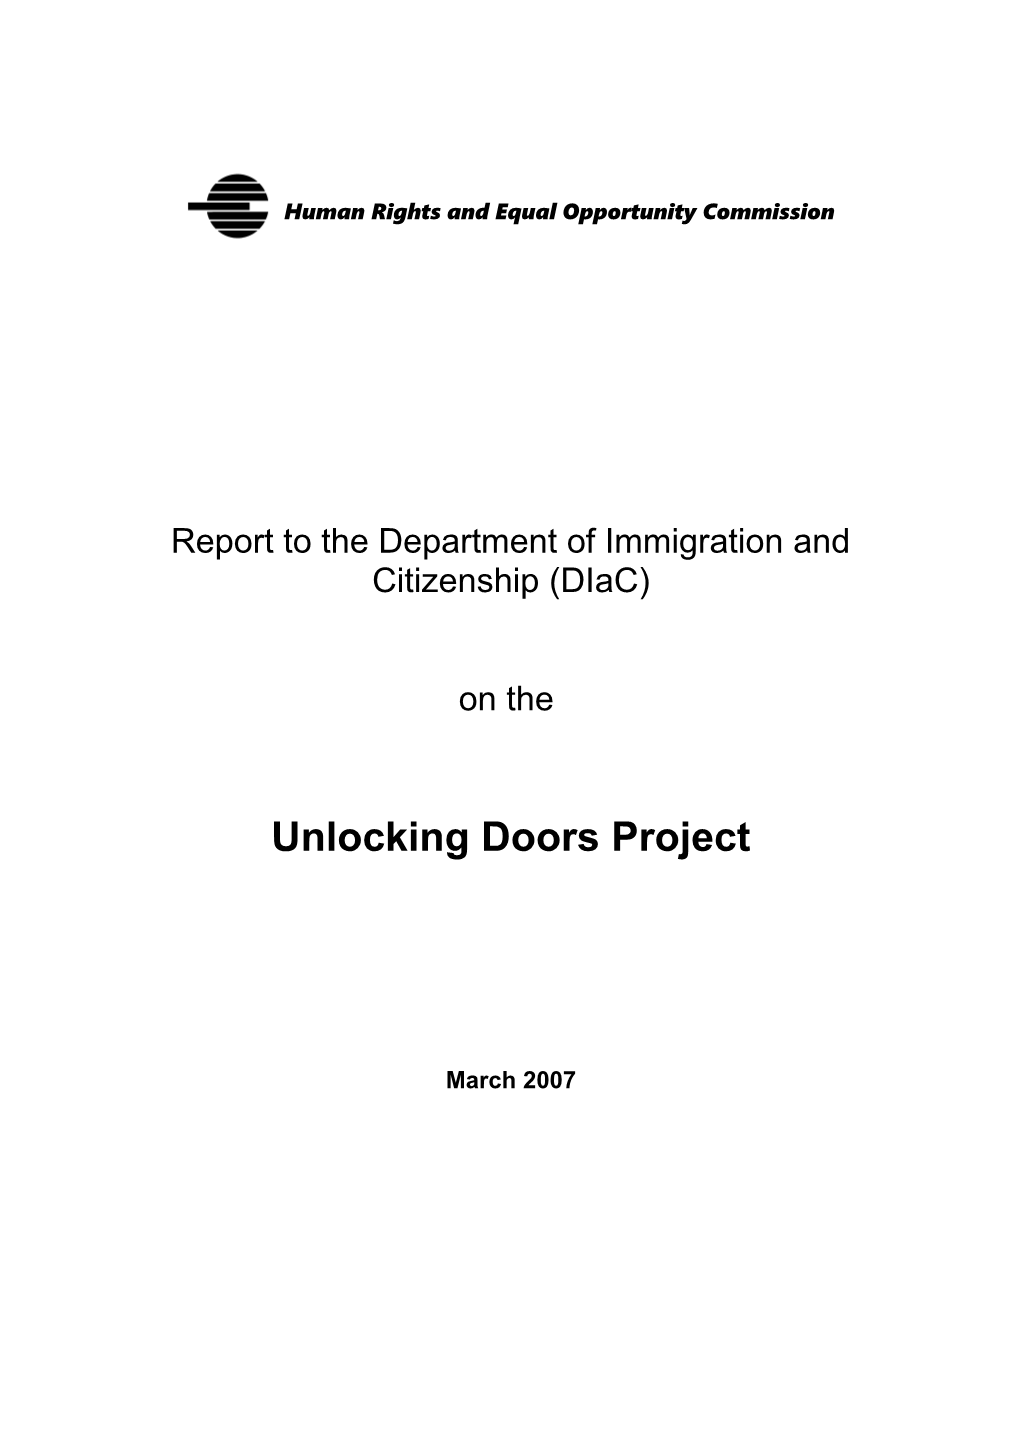 Unlocking Doors Project Report